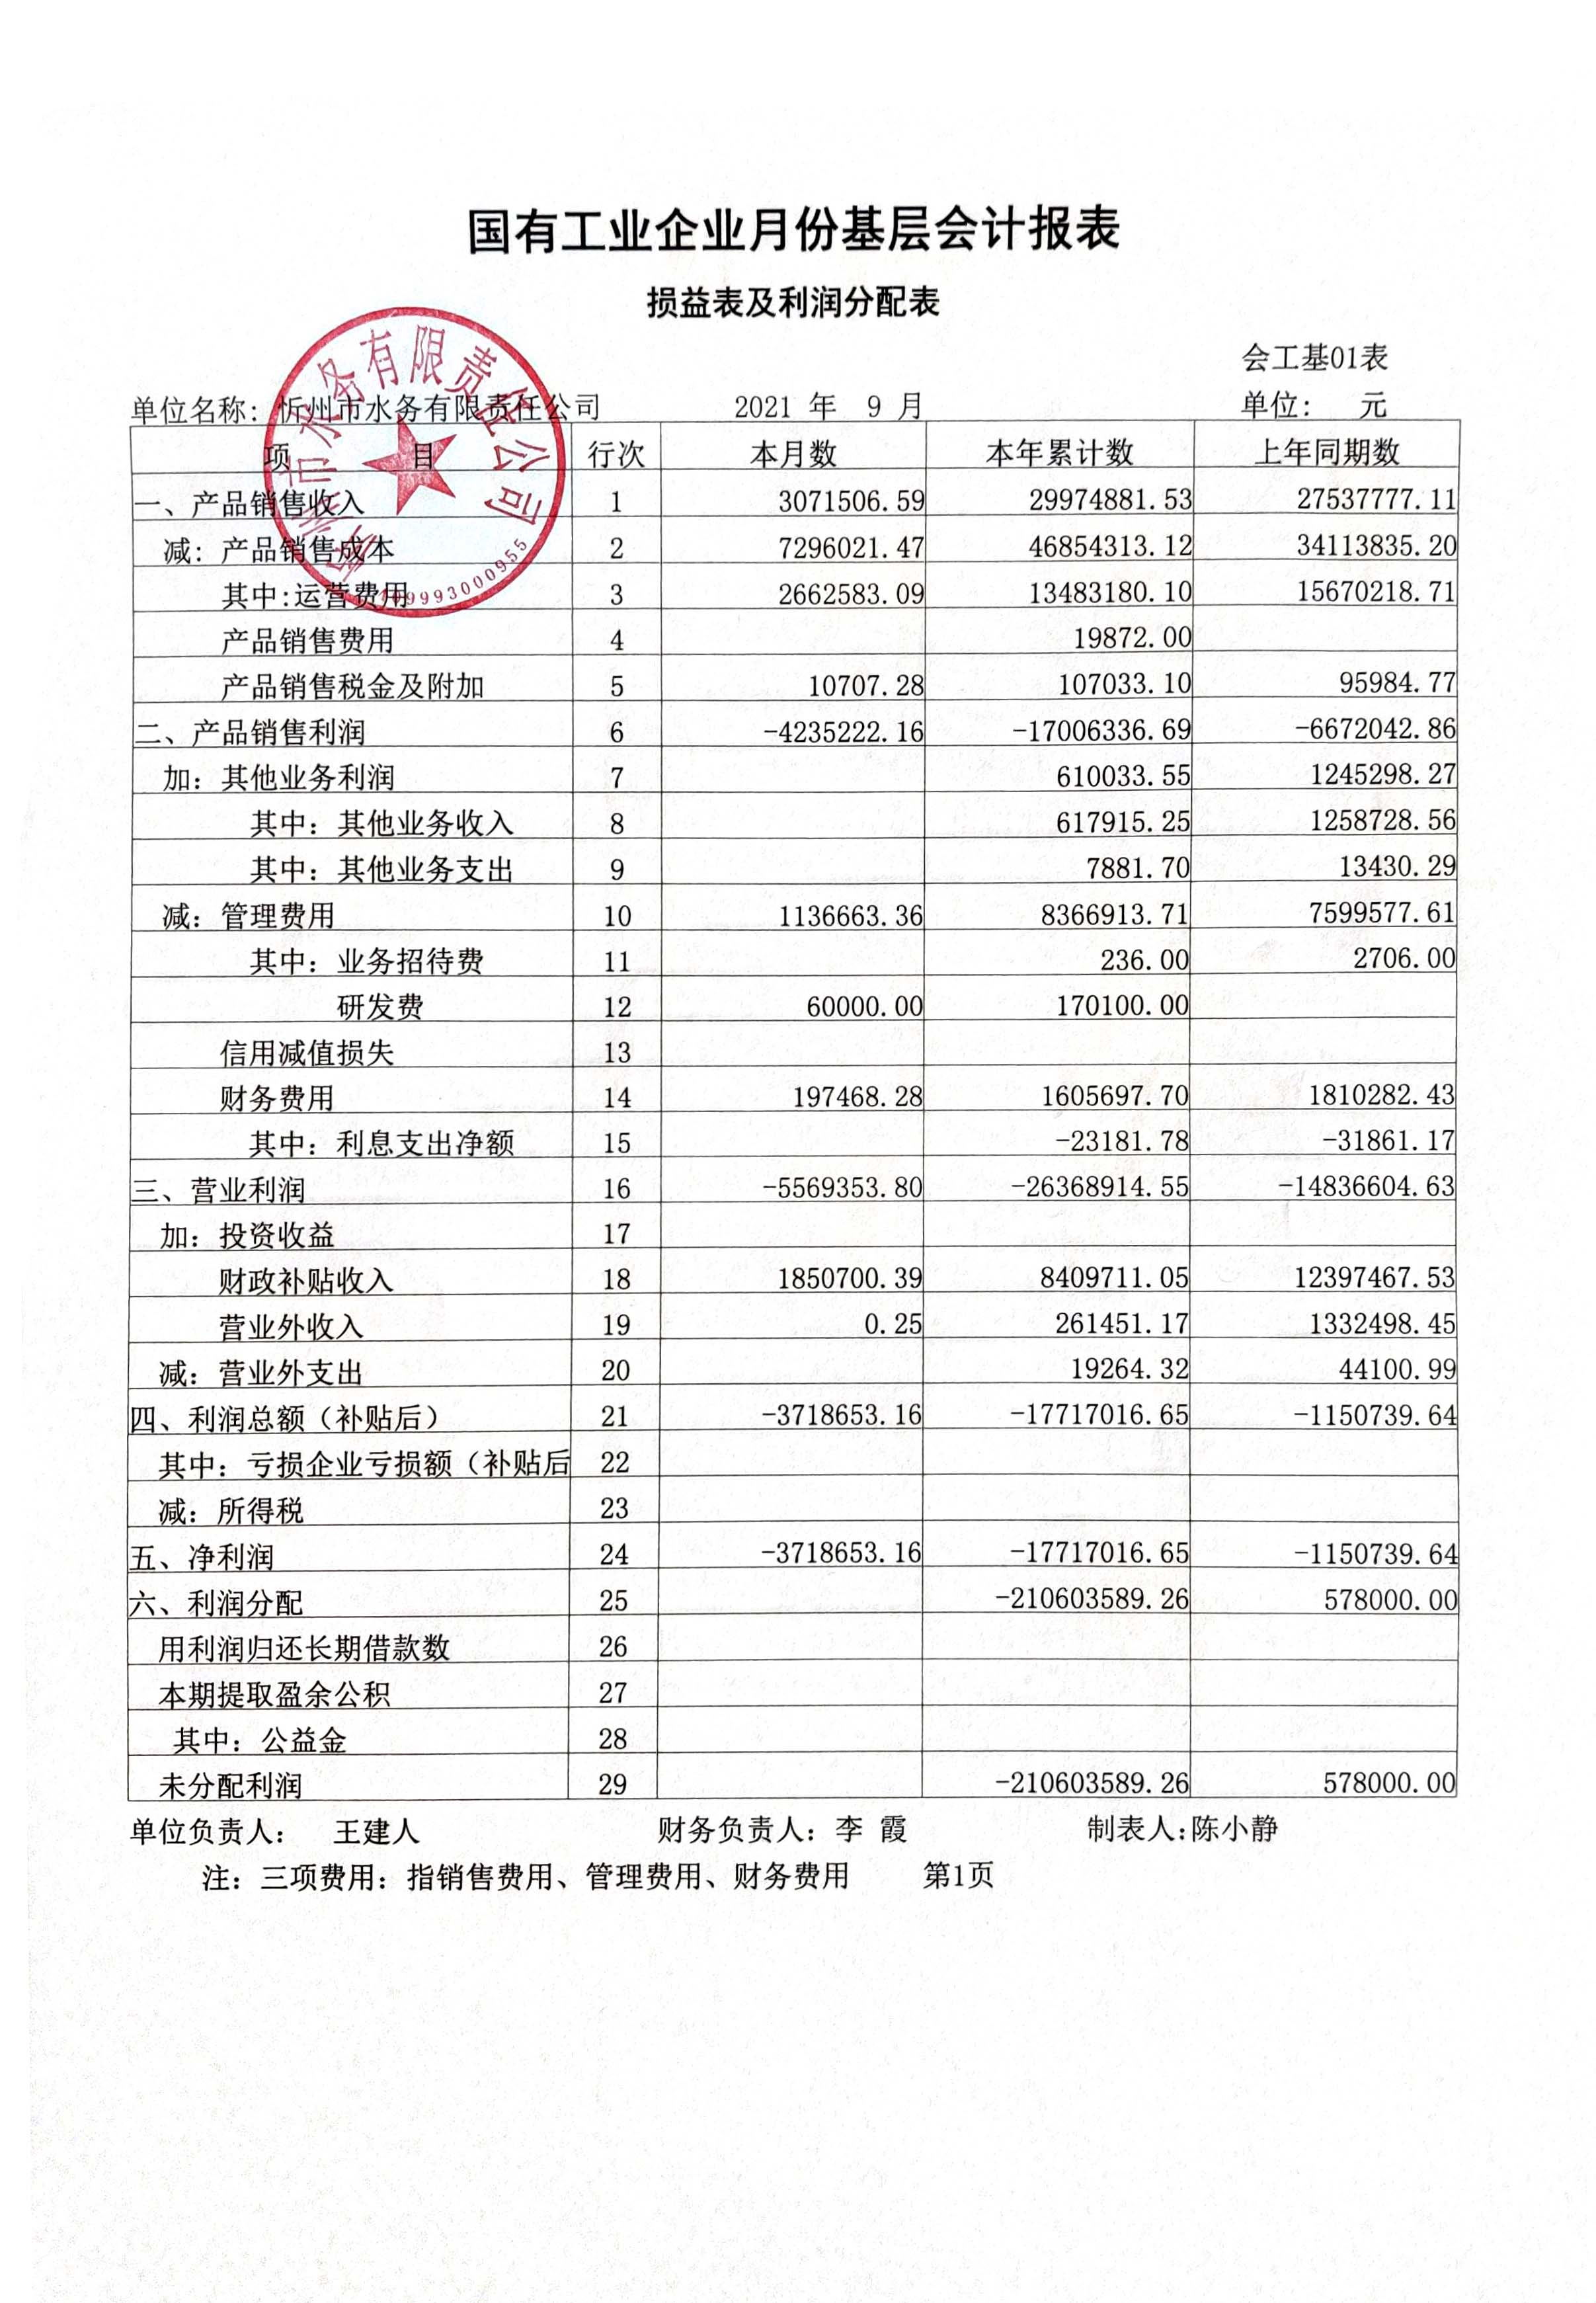 忻州市水务有限责任公司 2021年第三季度财务报表公示.jpg